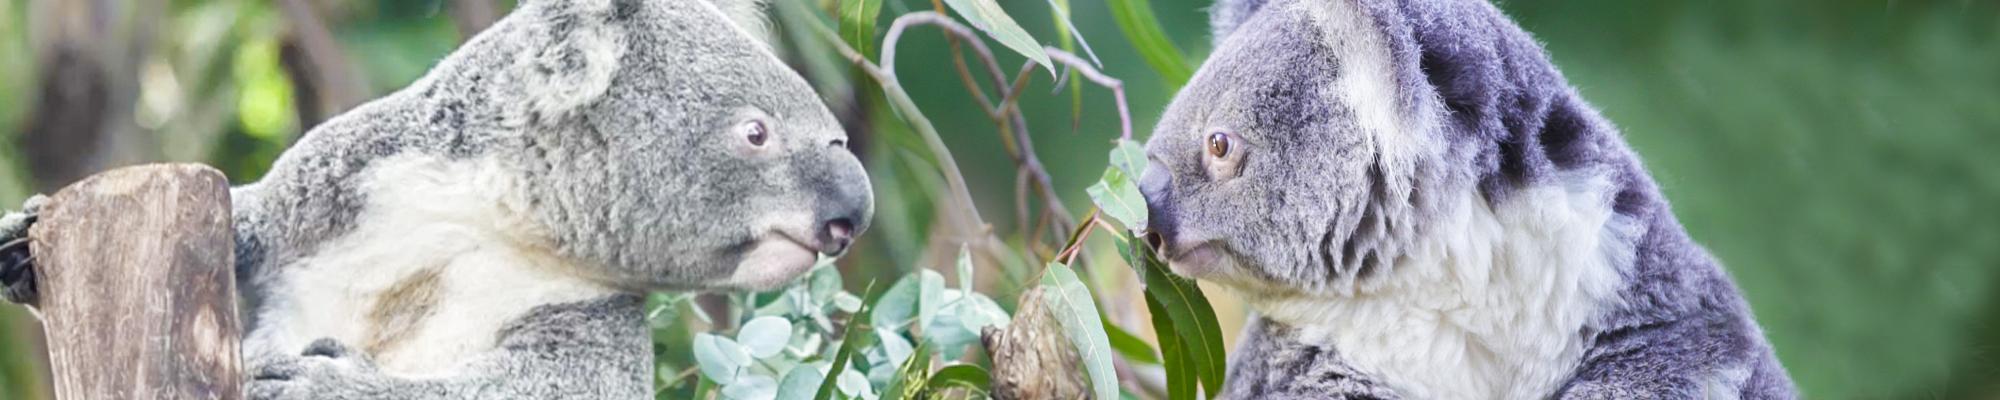 where to visit koalas in australia